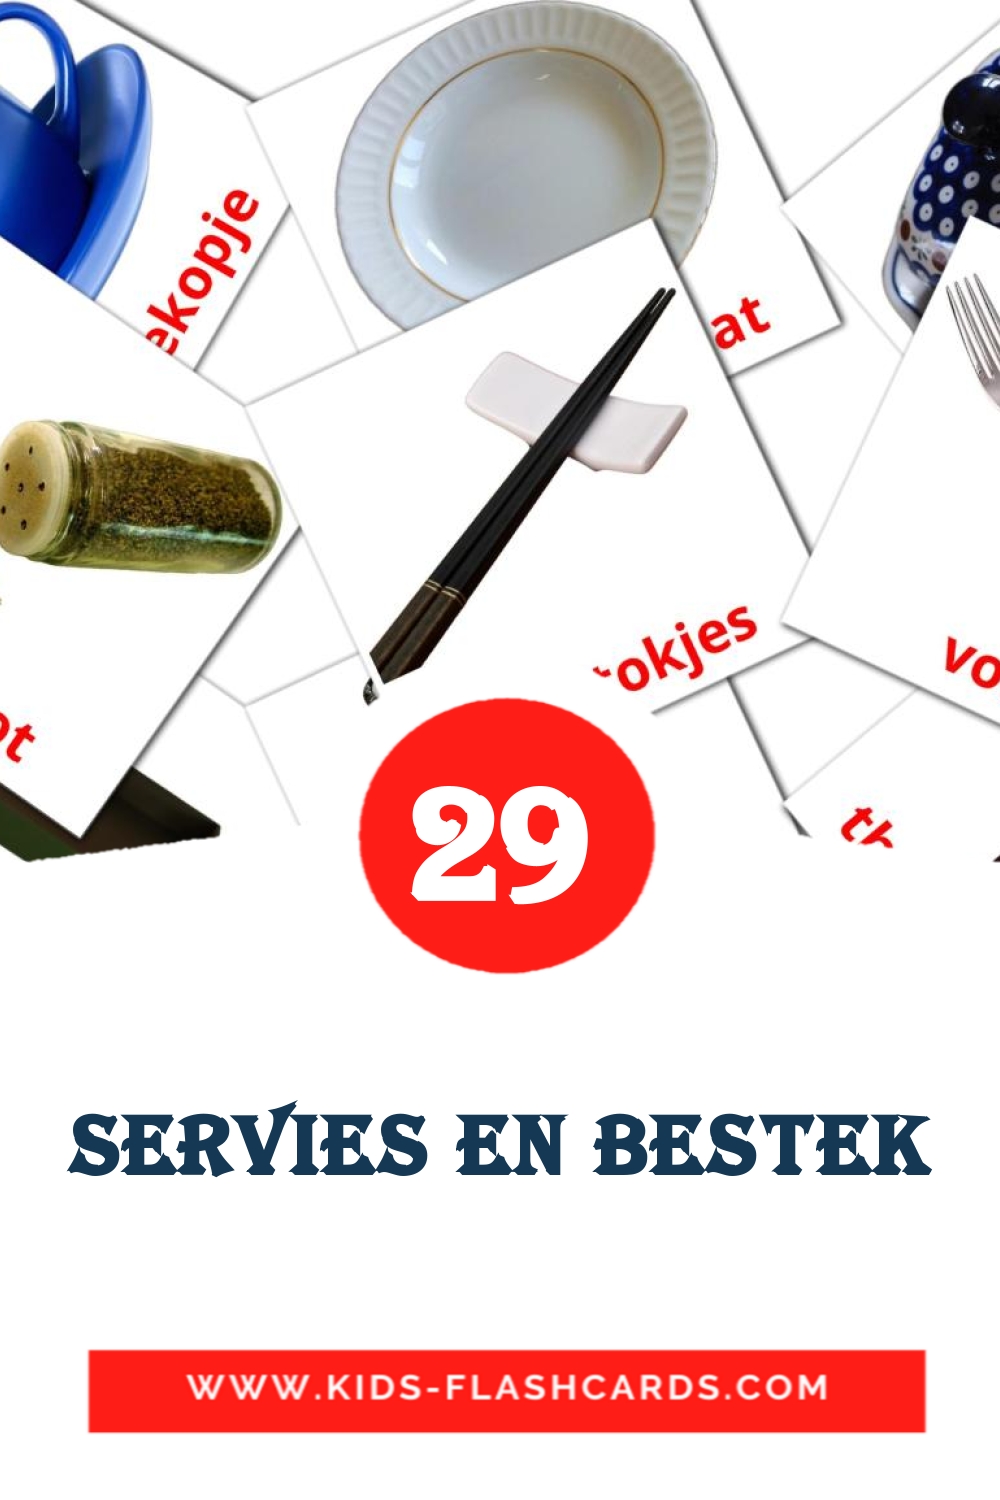 29 Servies en bestek Picture Cards for Kindergarden in dutch